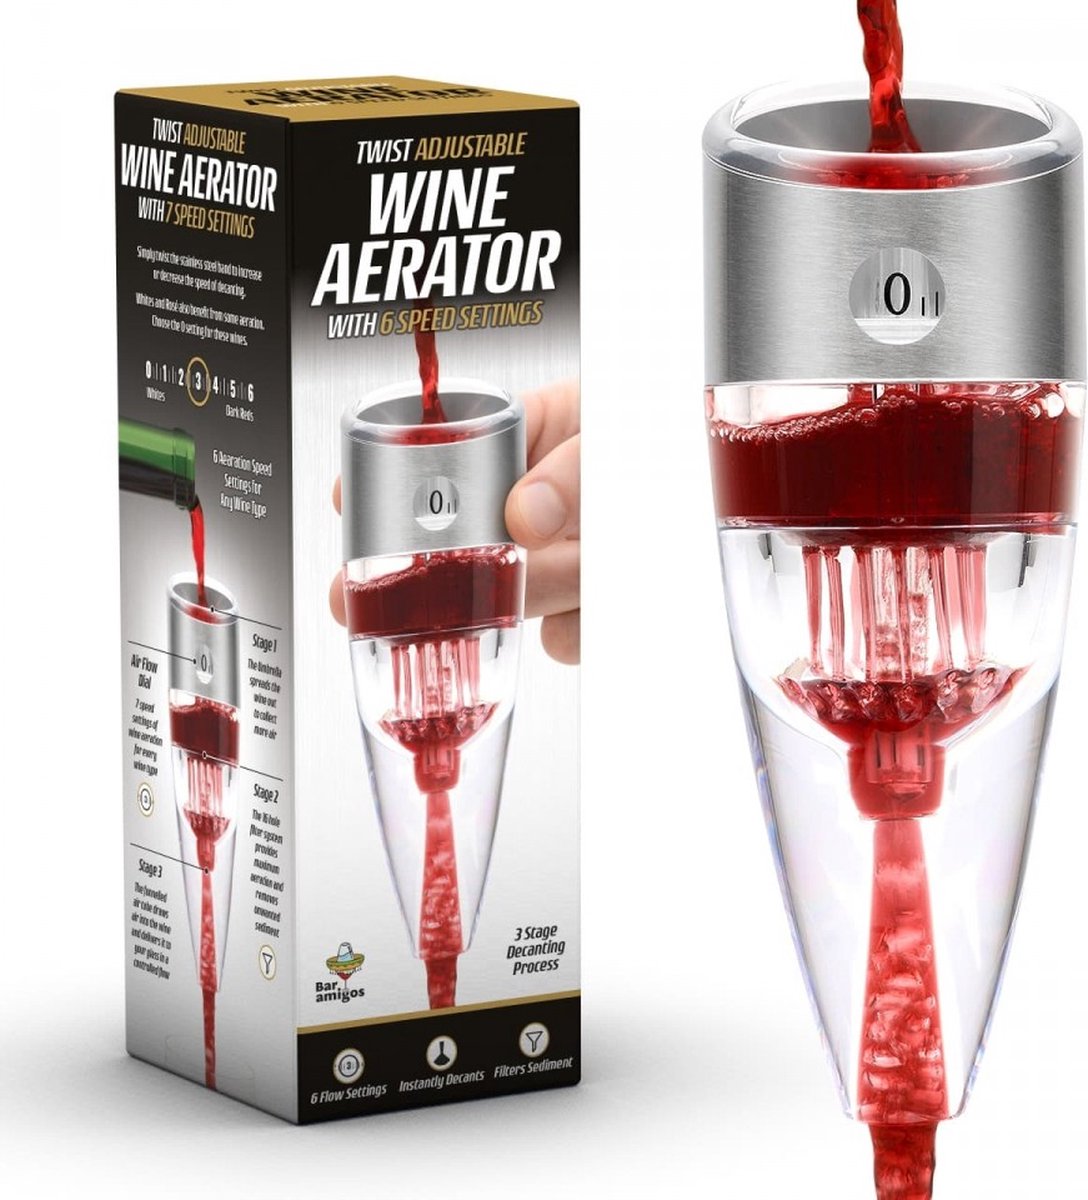 Verseur de vin Vinalito avec aérateur (Verseur d'aération de vin) Décanteur